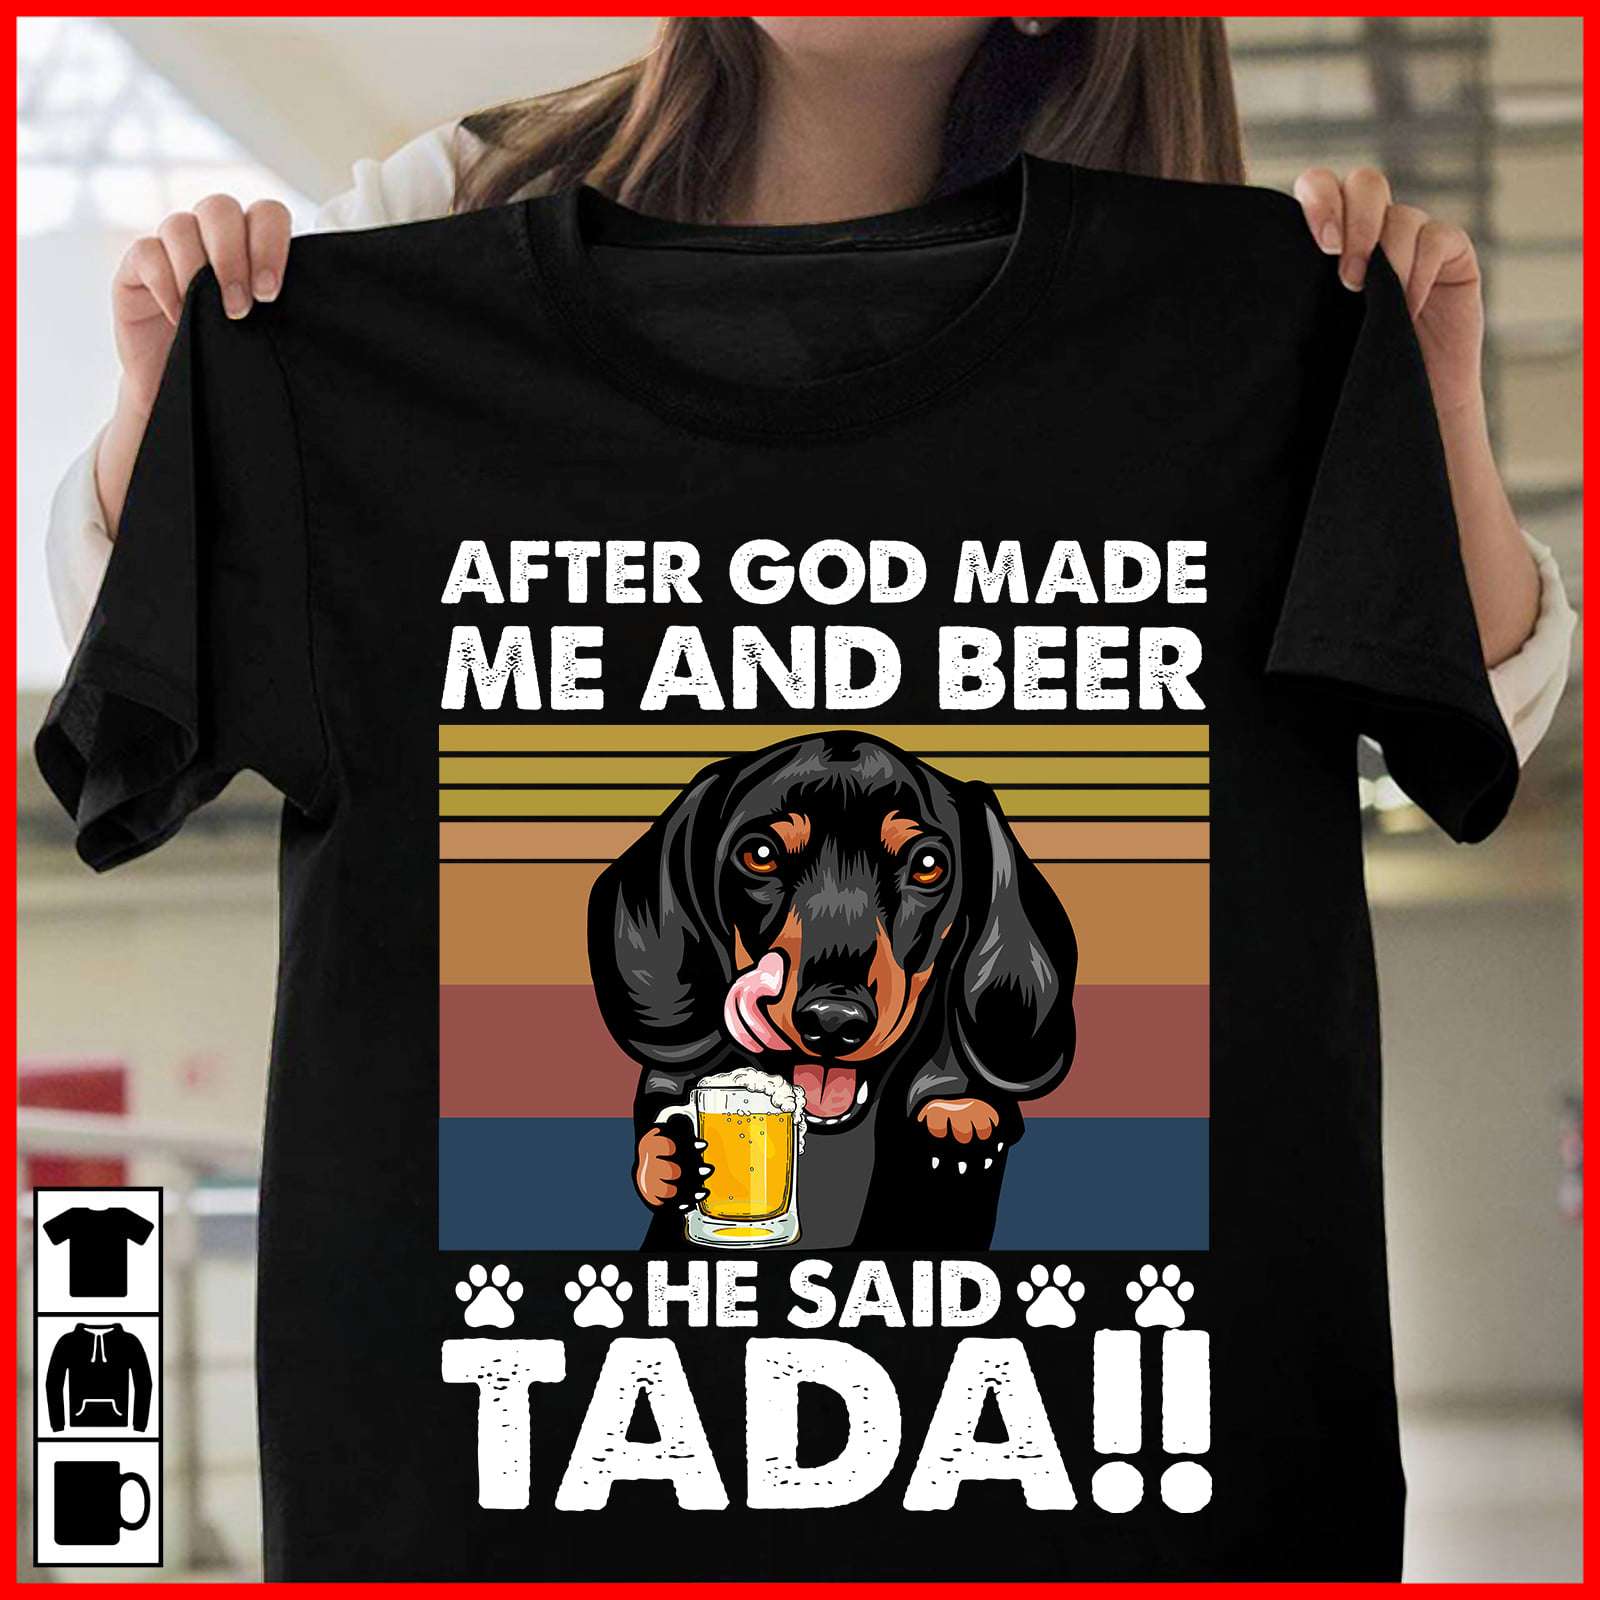 After god made me and beer he said Tada - Dachshund and beer, God made Dachshund